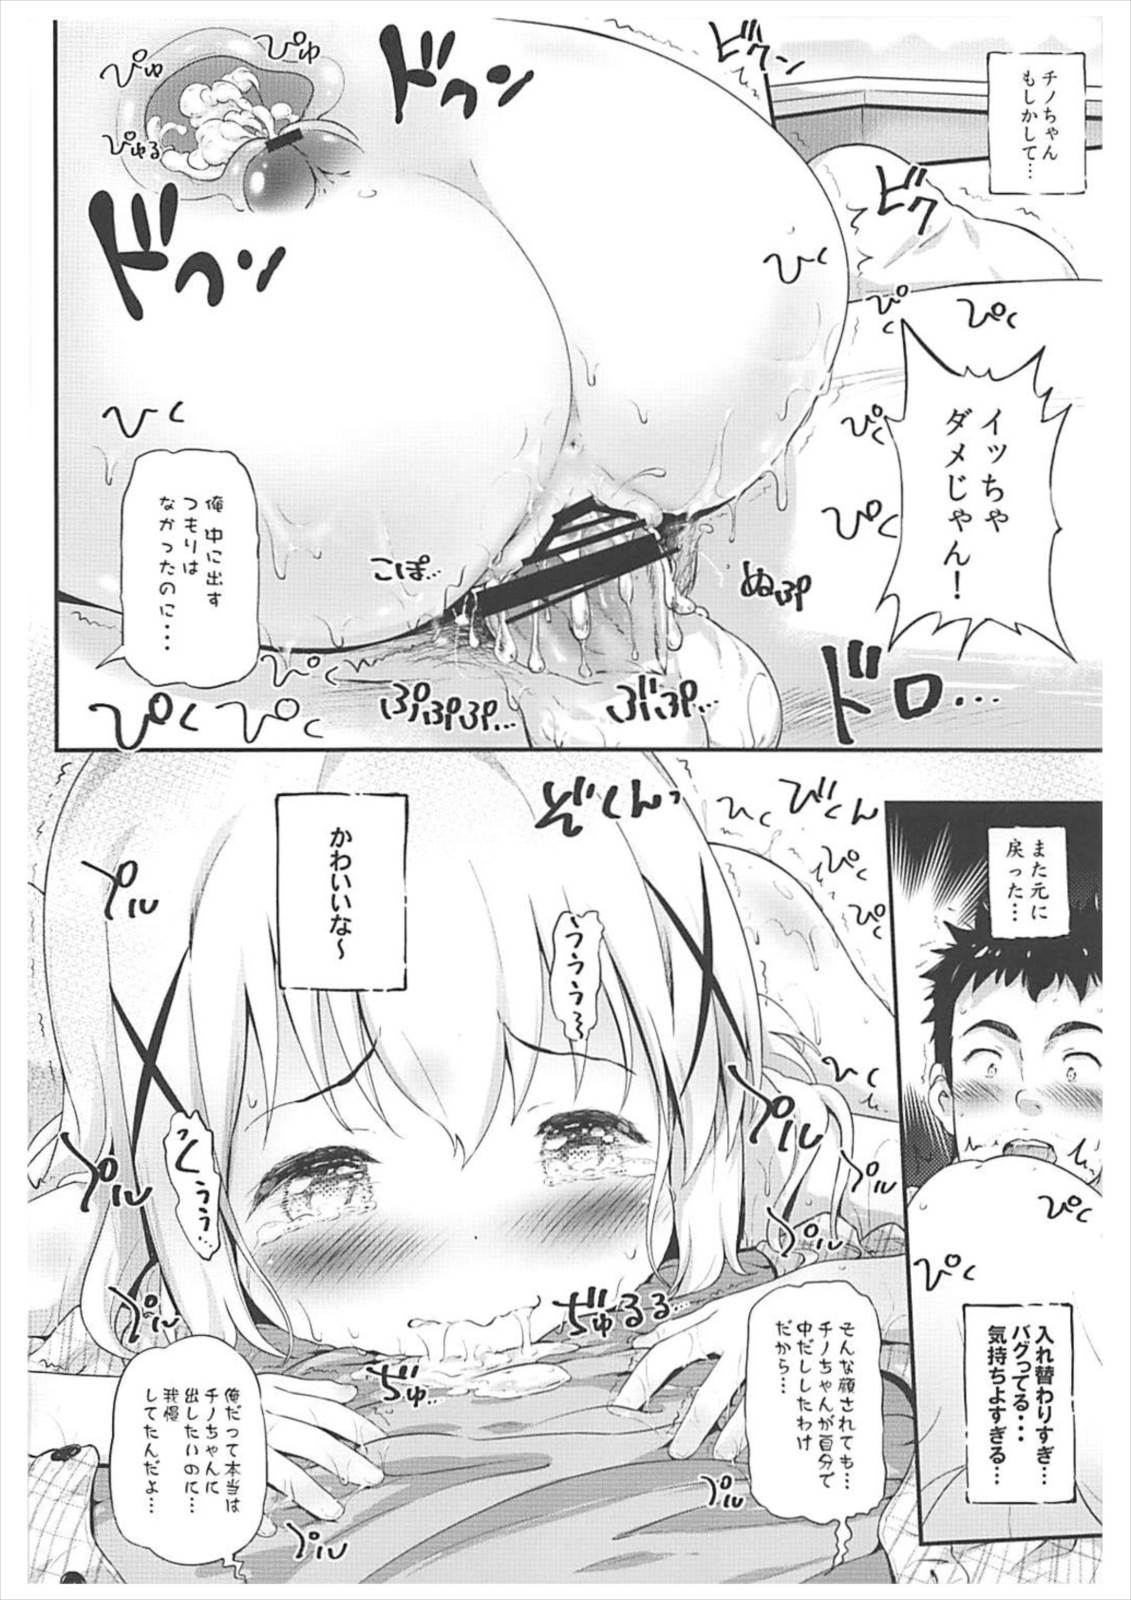 [Argyle check, Wanton Land Kumiai (Komamemaru)] Toro Musume 14 Chino-chan Hajimemashita 2 kai (Gochuumon wa Usagi desu ka?) [2018-02-01] page 19 full